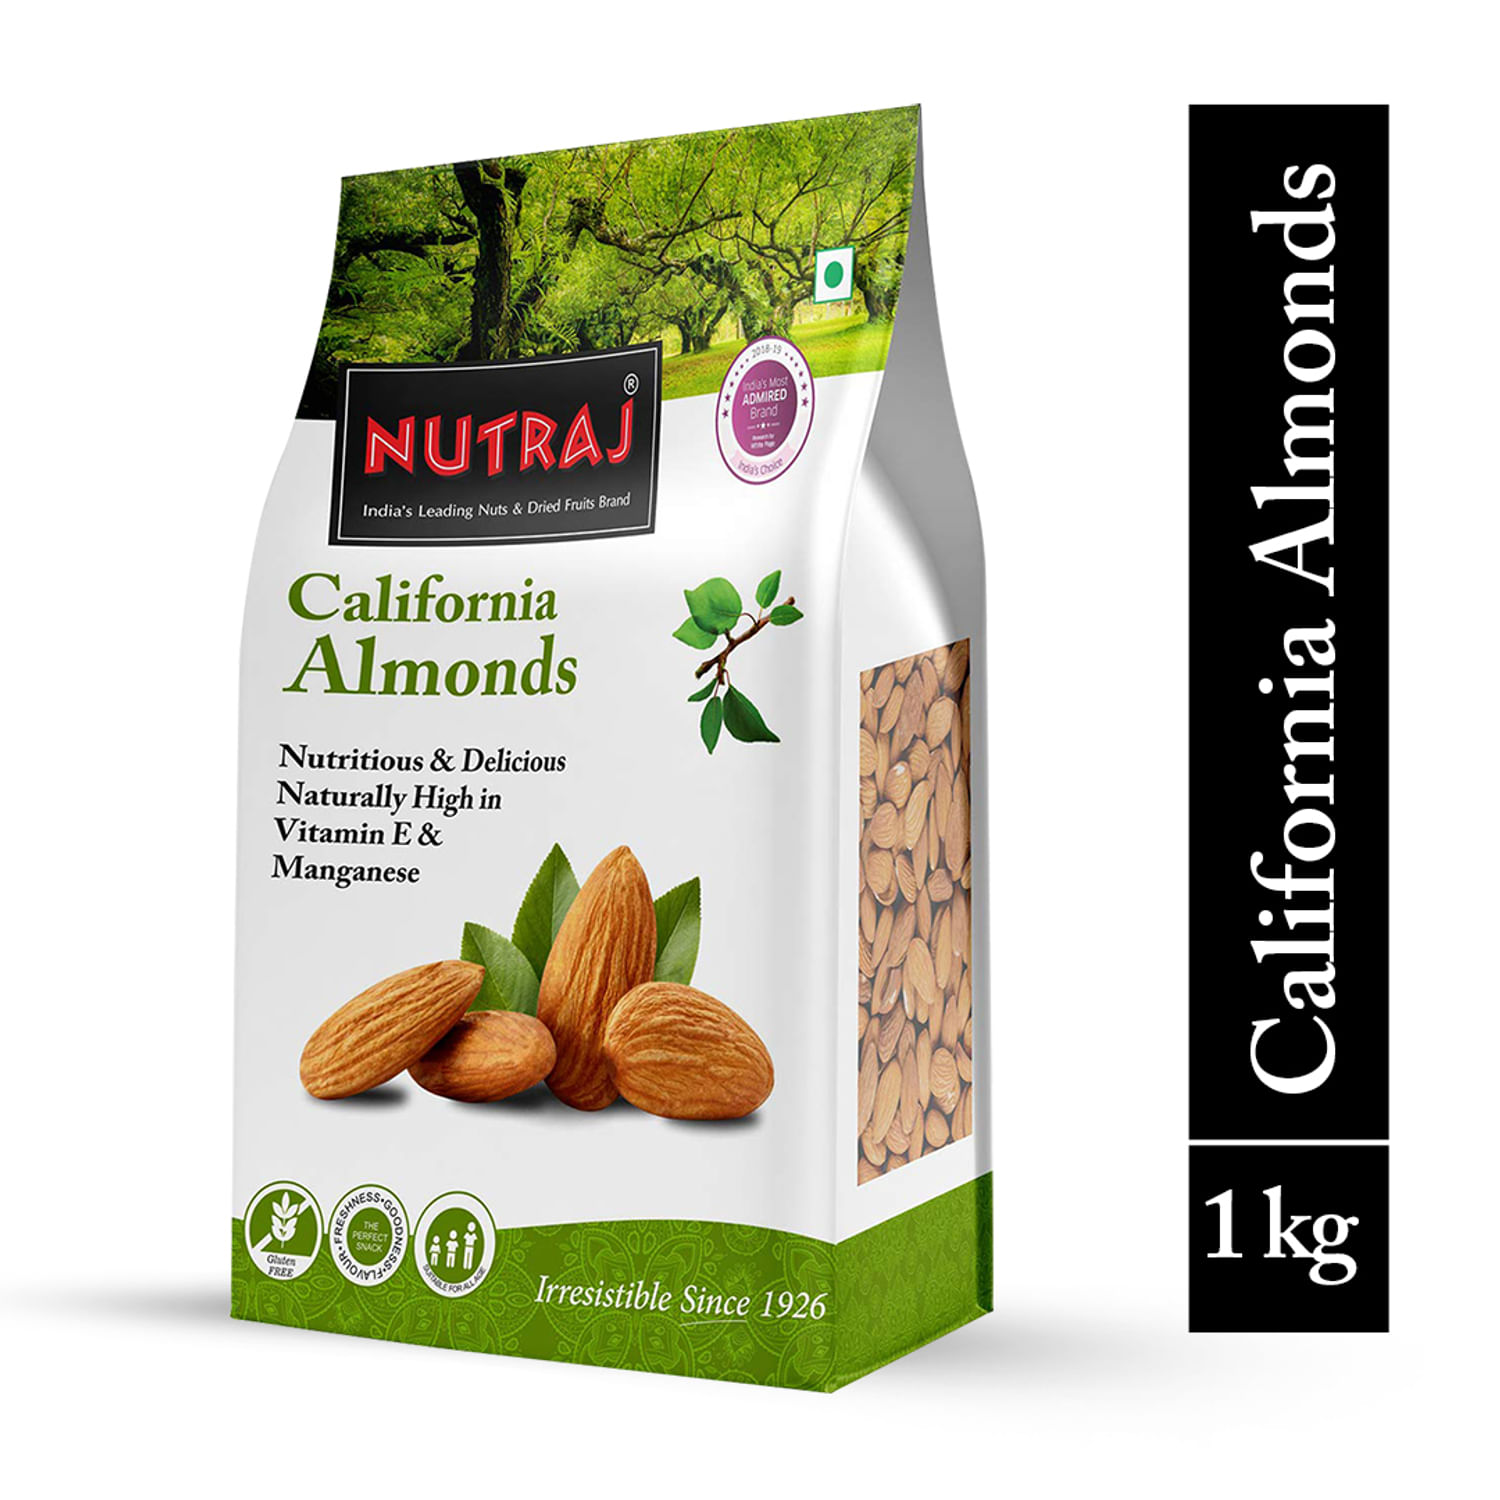 Nutraj California Almonds 1 Kg 